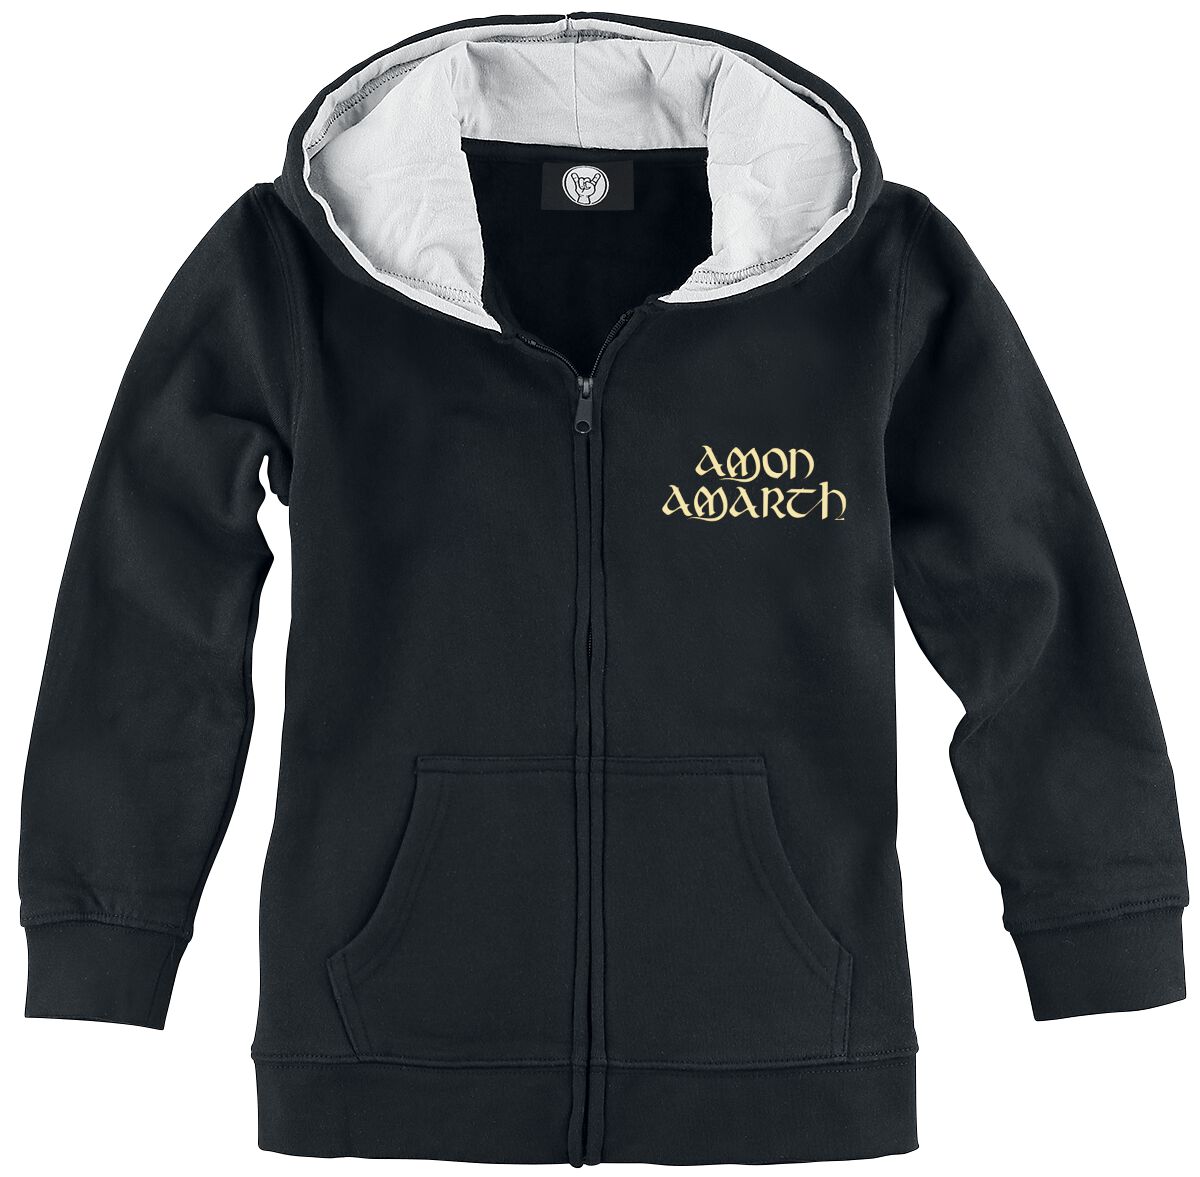 Amon Amarth Kinder-Kapuzenjacke für Kinder - Metal-Kids - Little Berserker - für Mädchen & Jungen - schwarz  - Lizenziertes Merchandise!